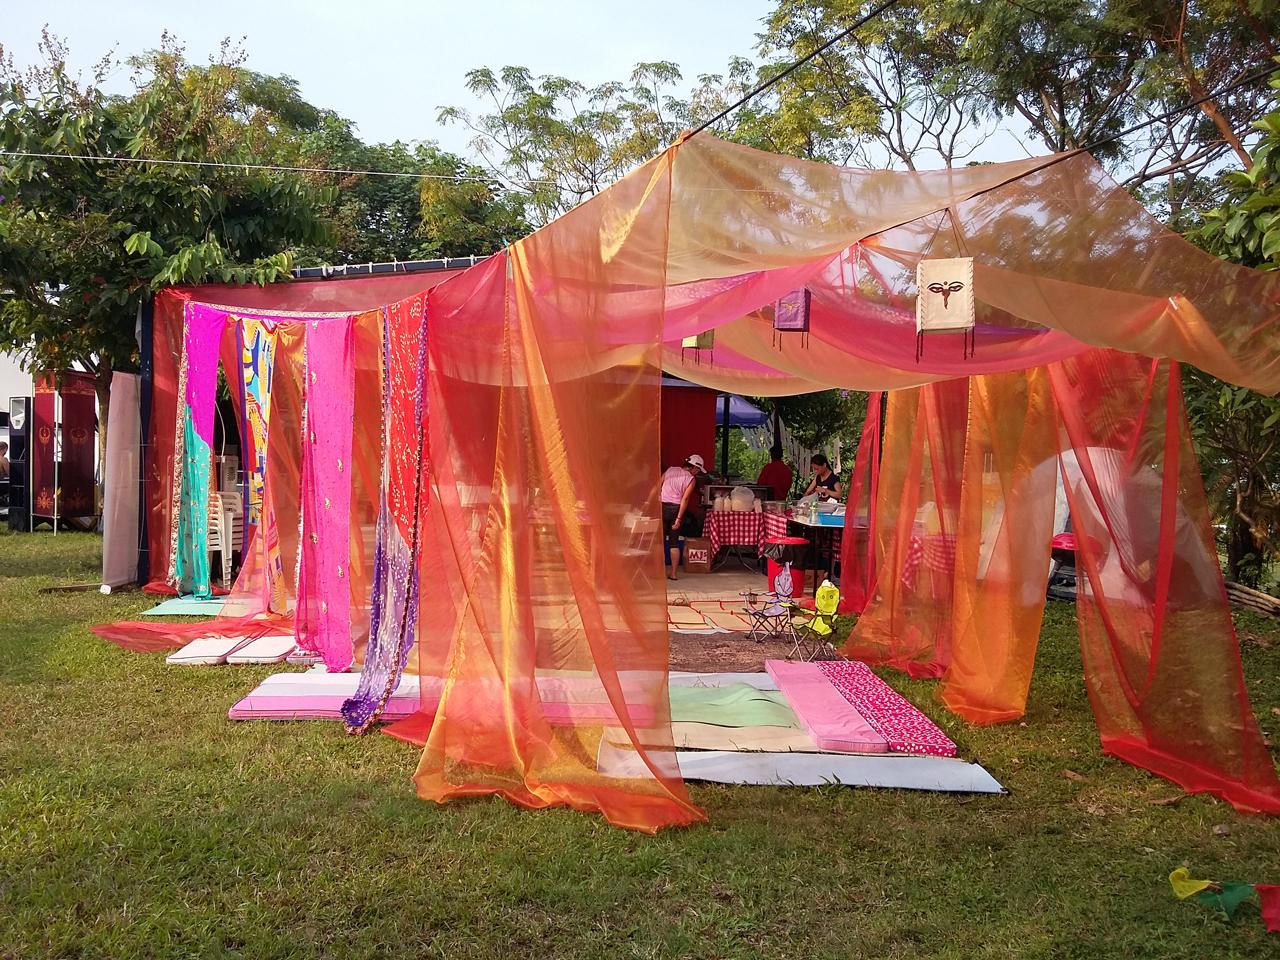 imagine-peace-tent